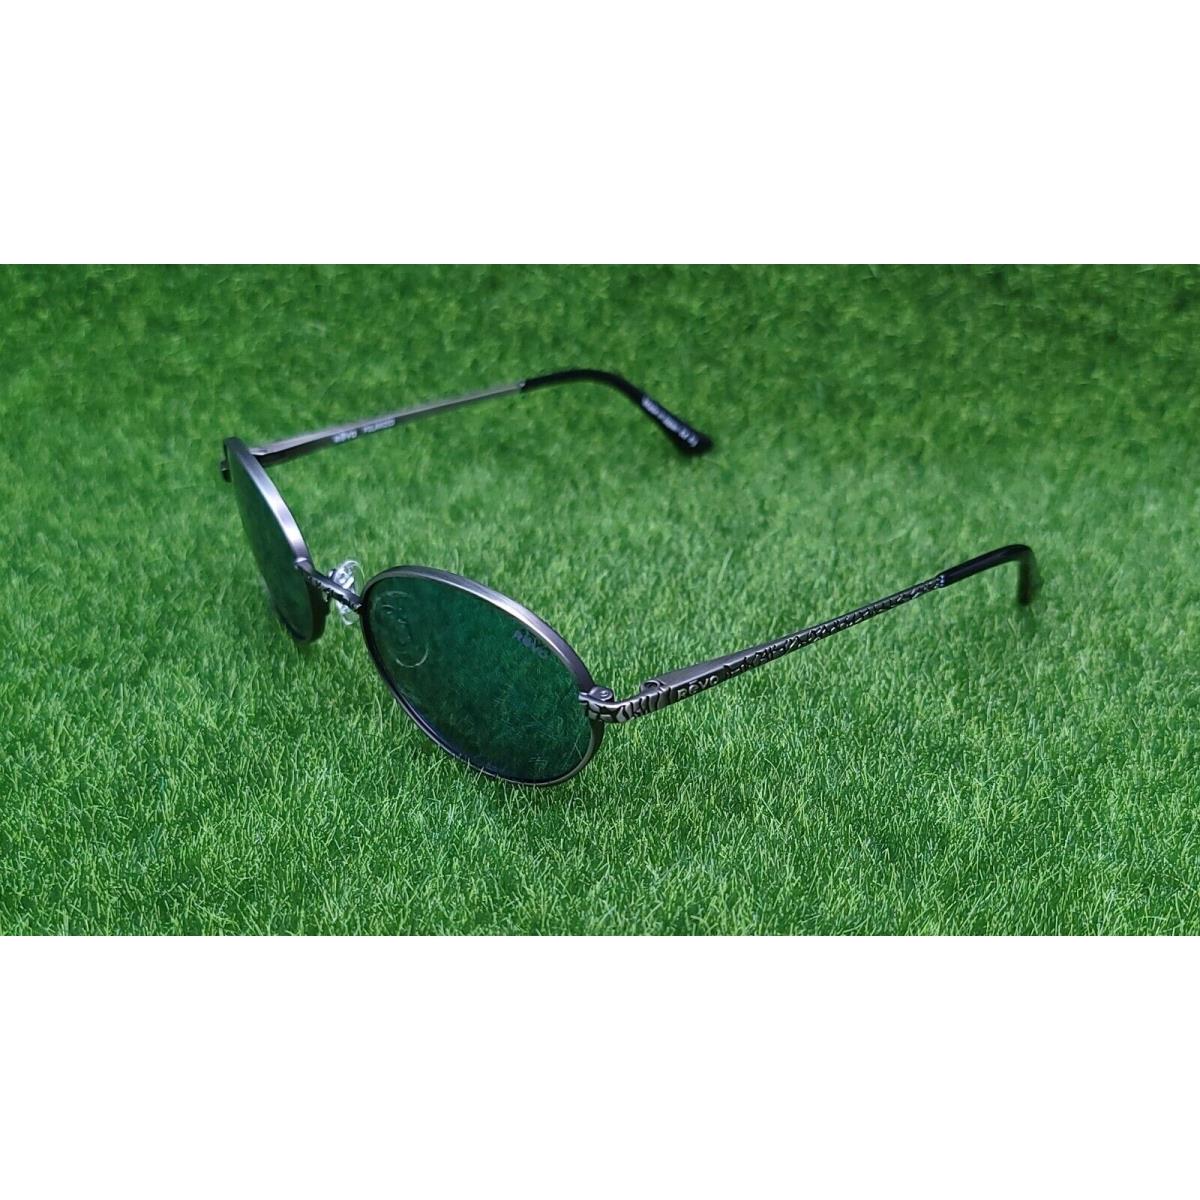 Revo sunglasses Python - Silver Frame, Blue Lens